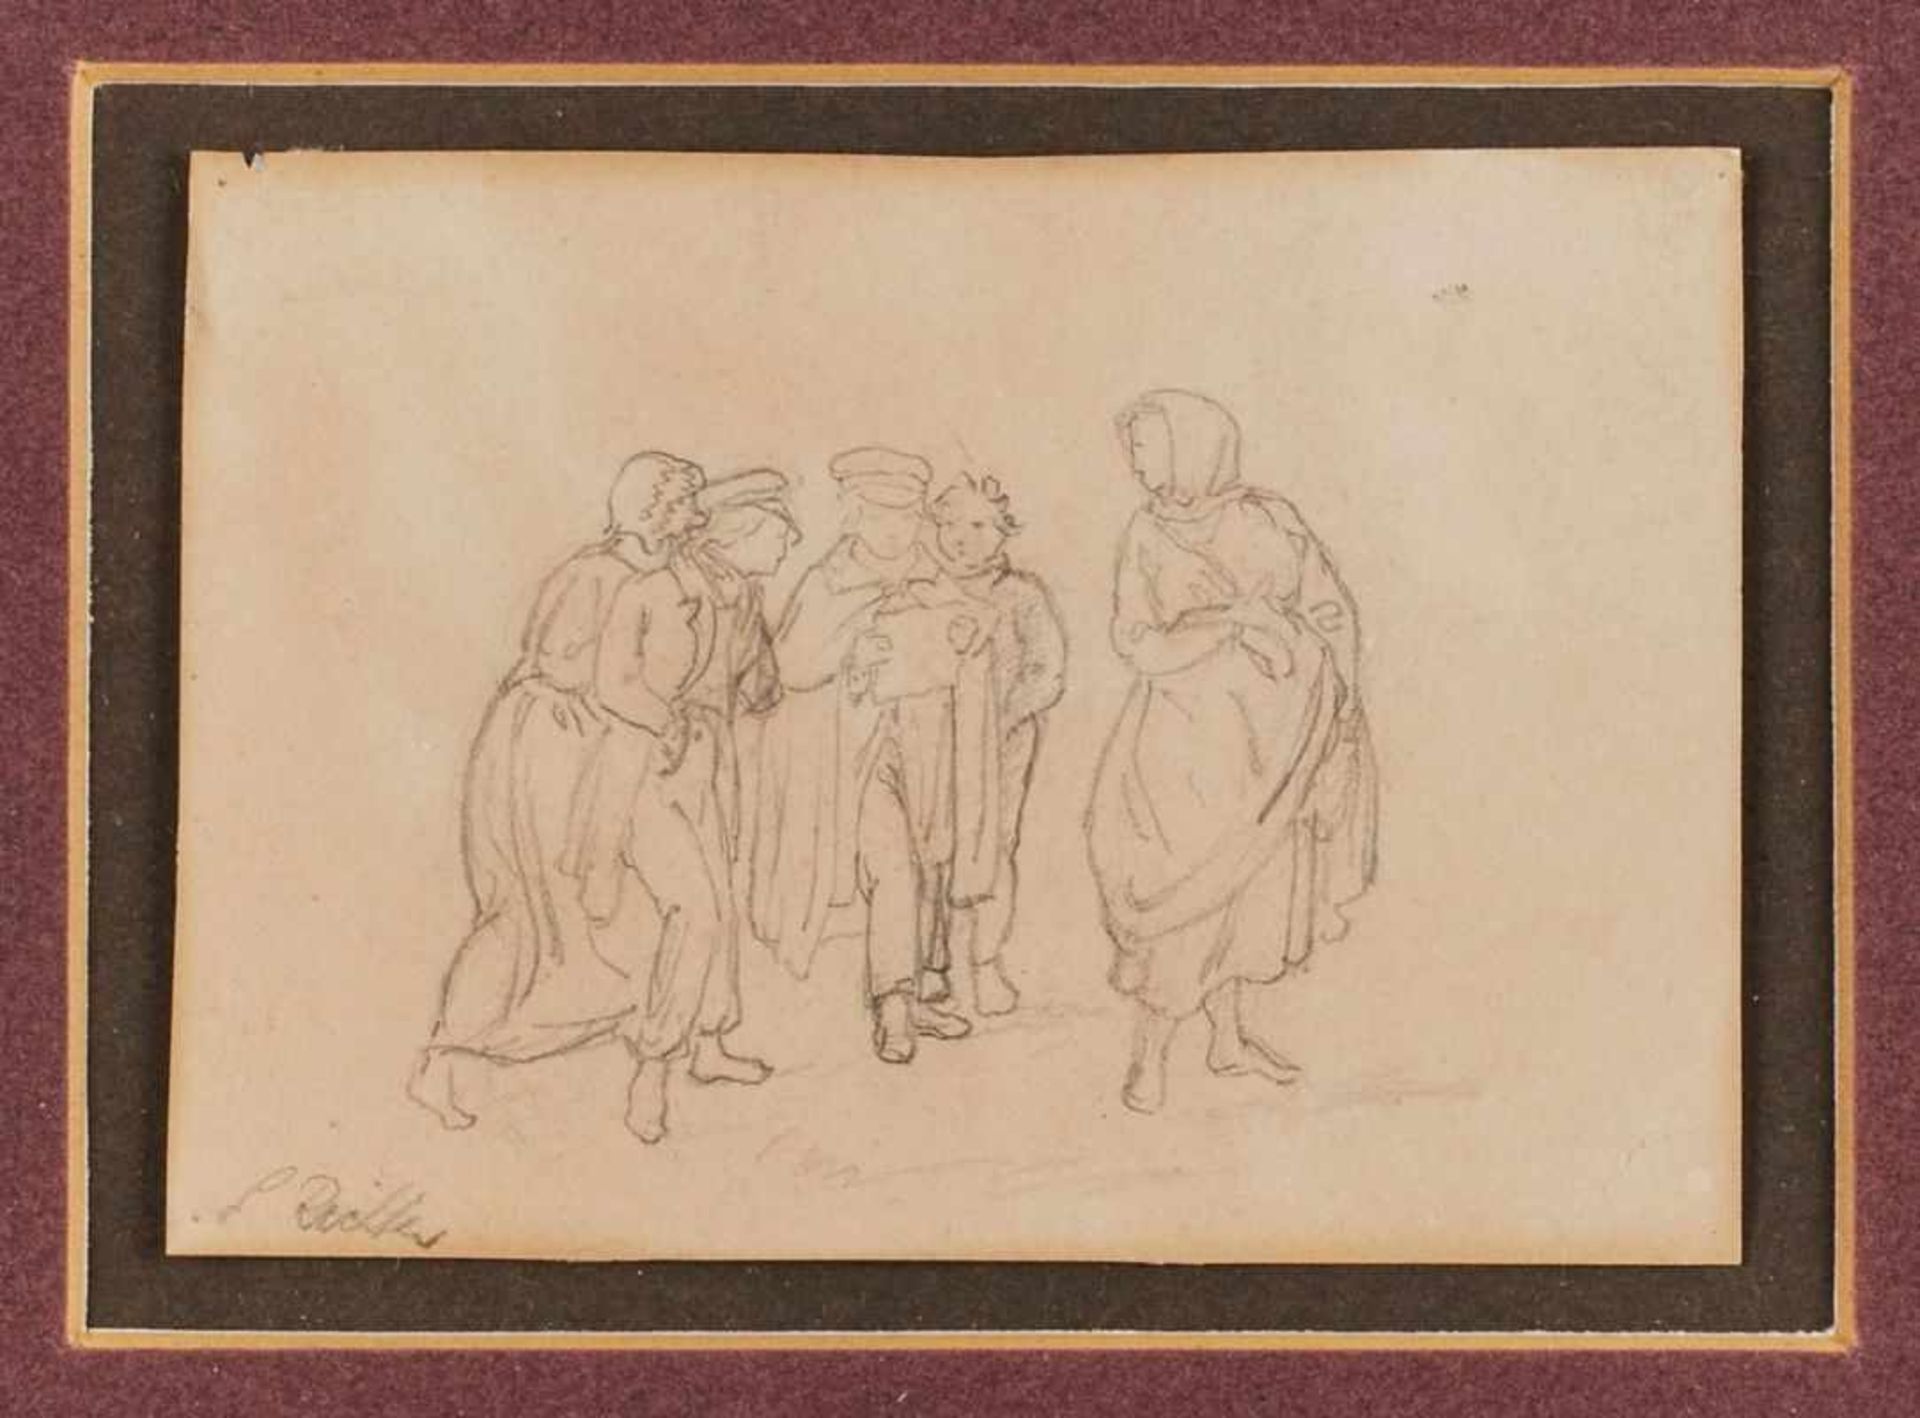 Bleistiftzeichnung Adrian Ludwig Richter1803 Dresden - 1884 Dresden "Figurengruppe mit Studenten und